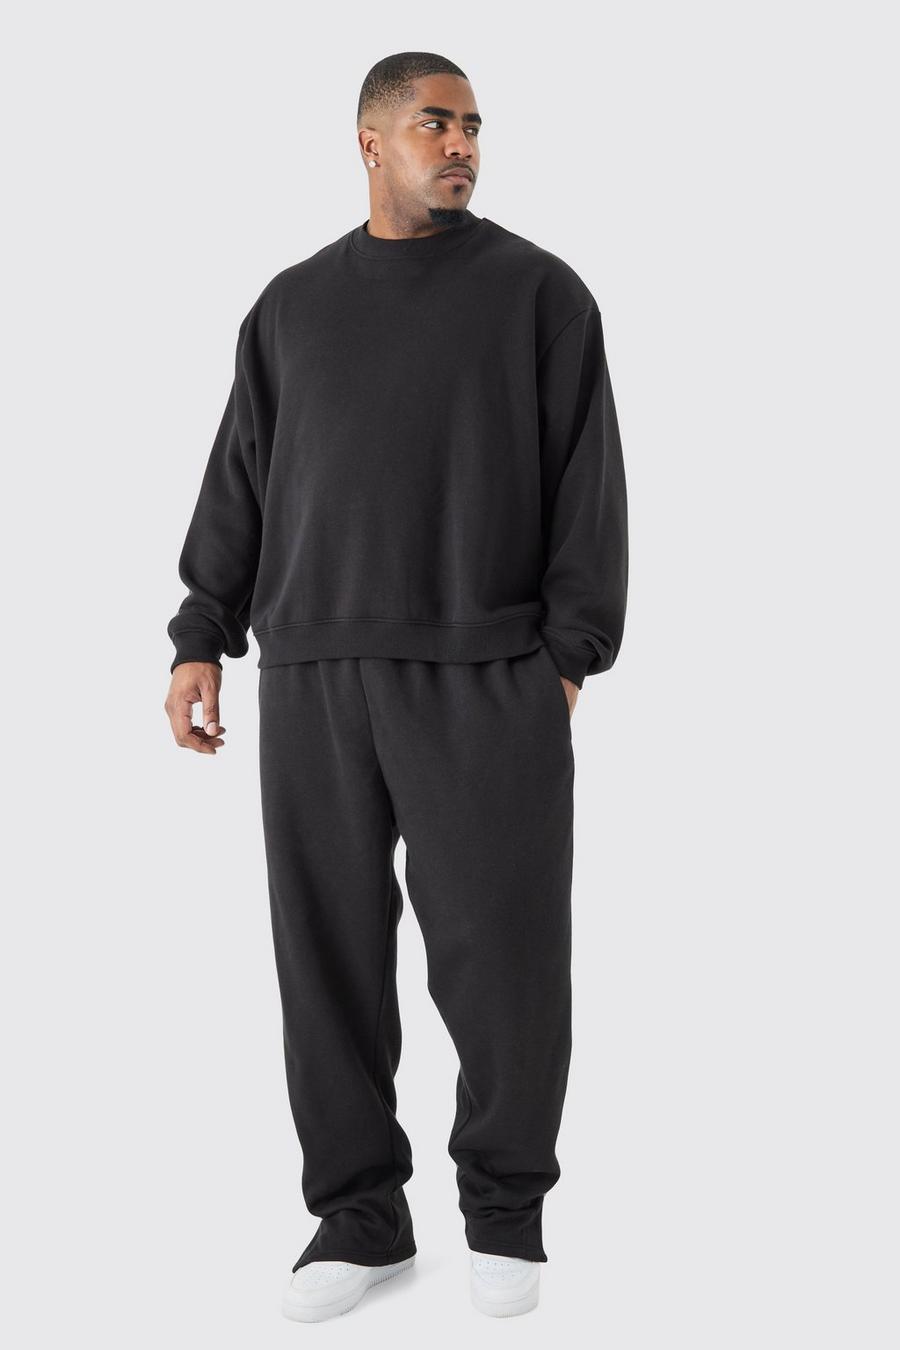 Black Plus Mjukisset med sweatshirt i boxig modell